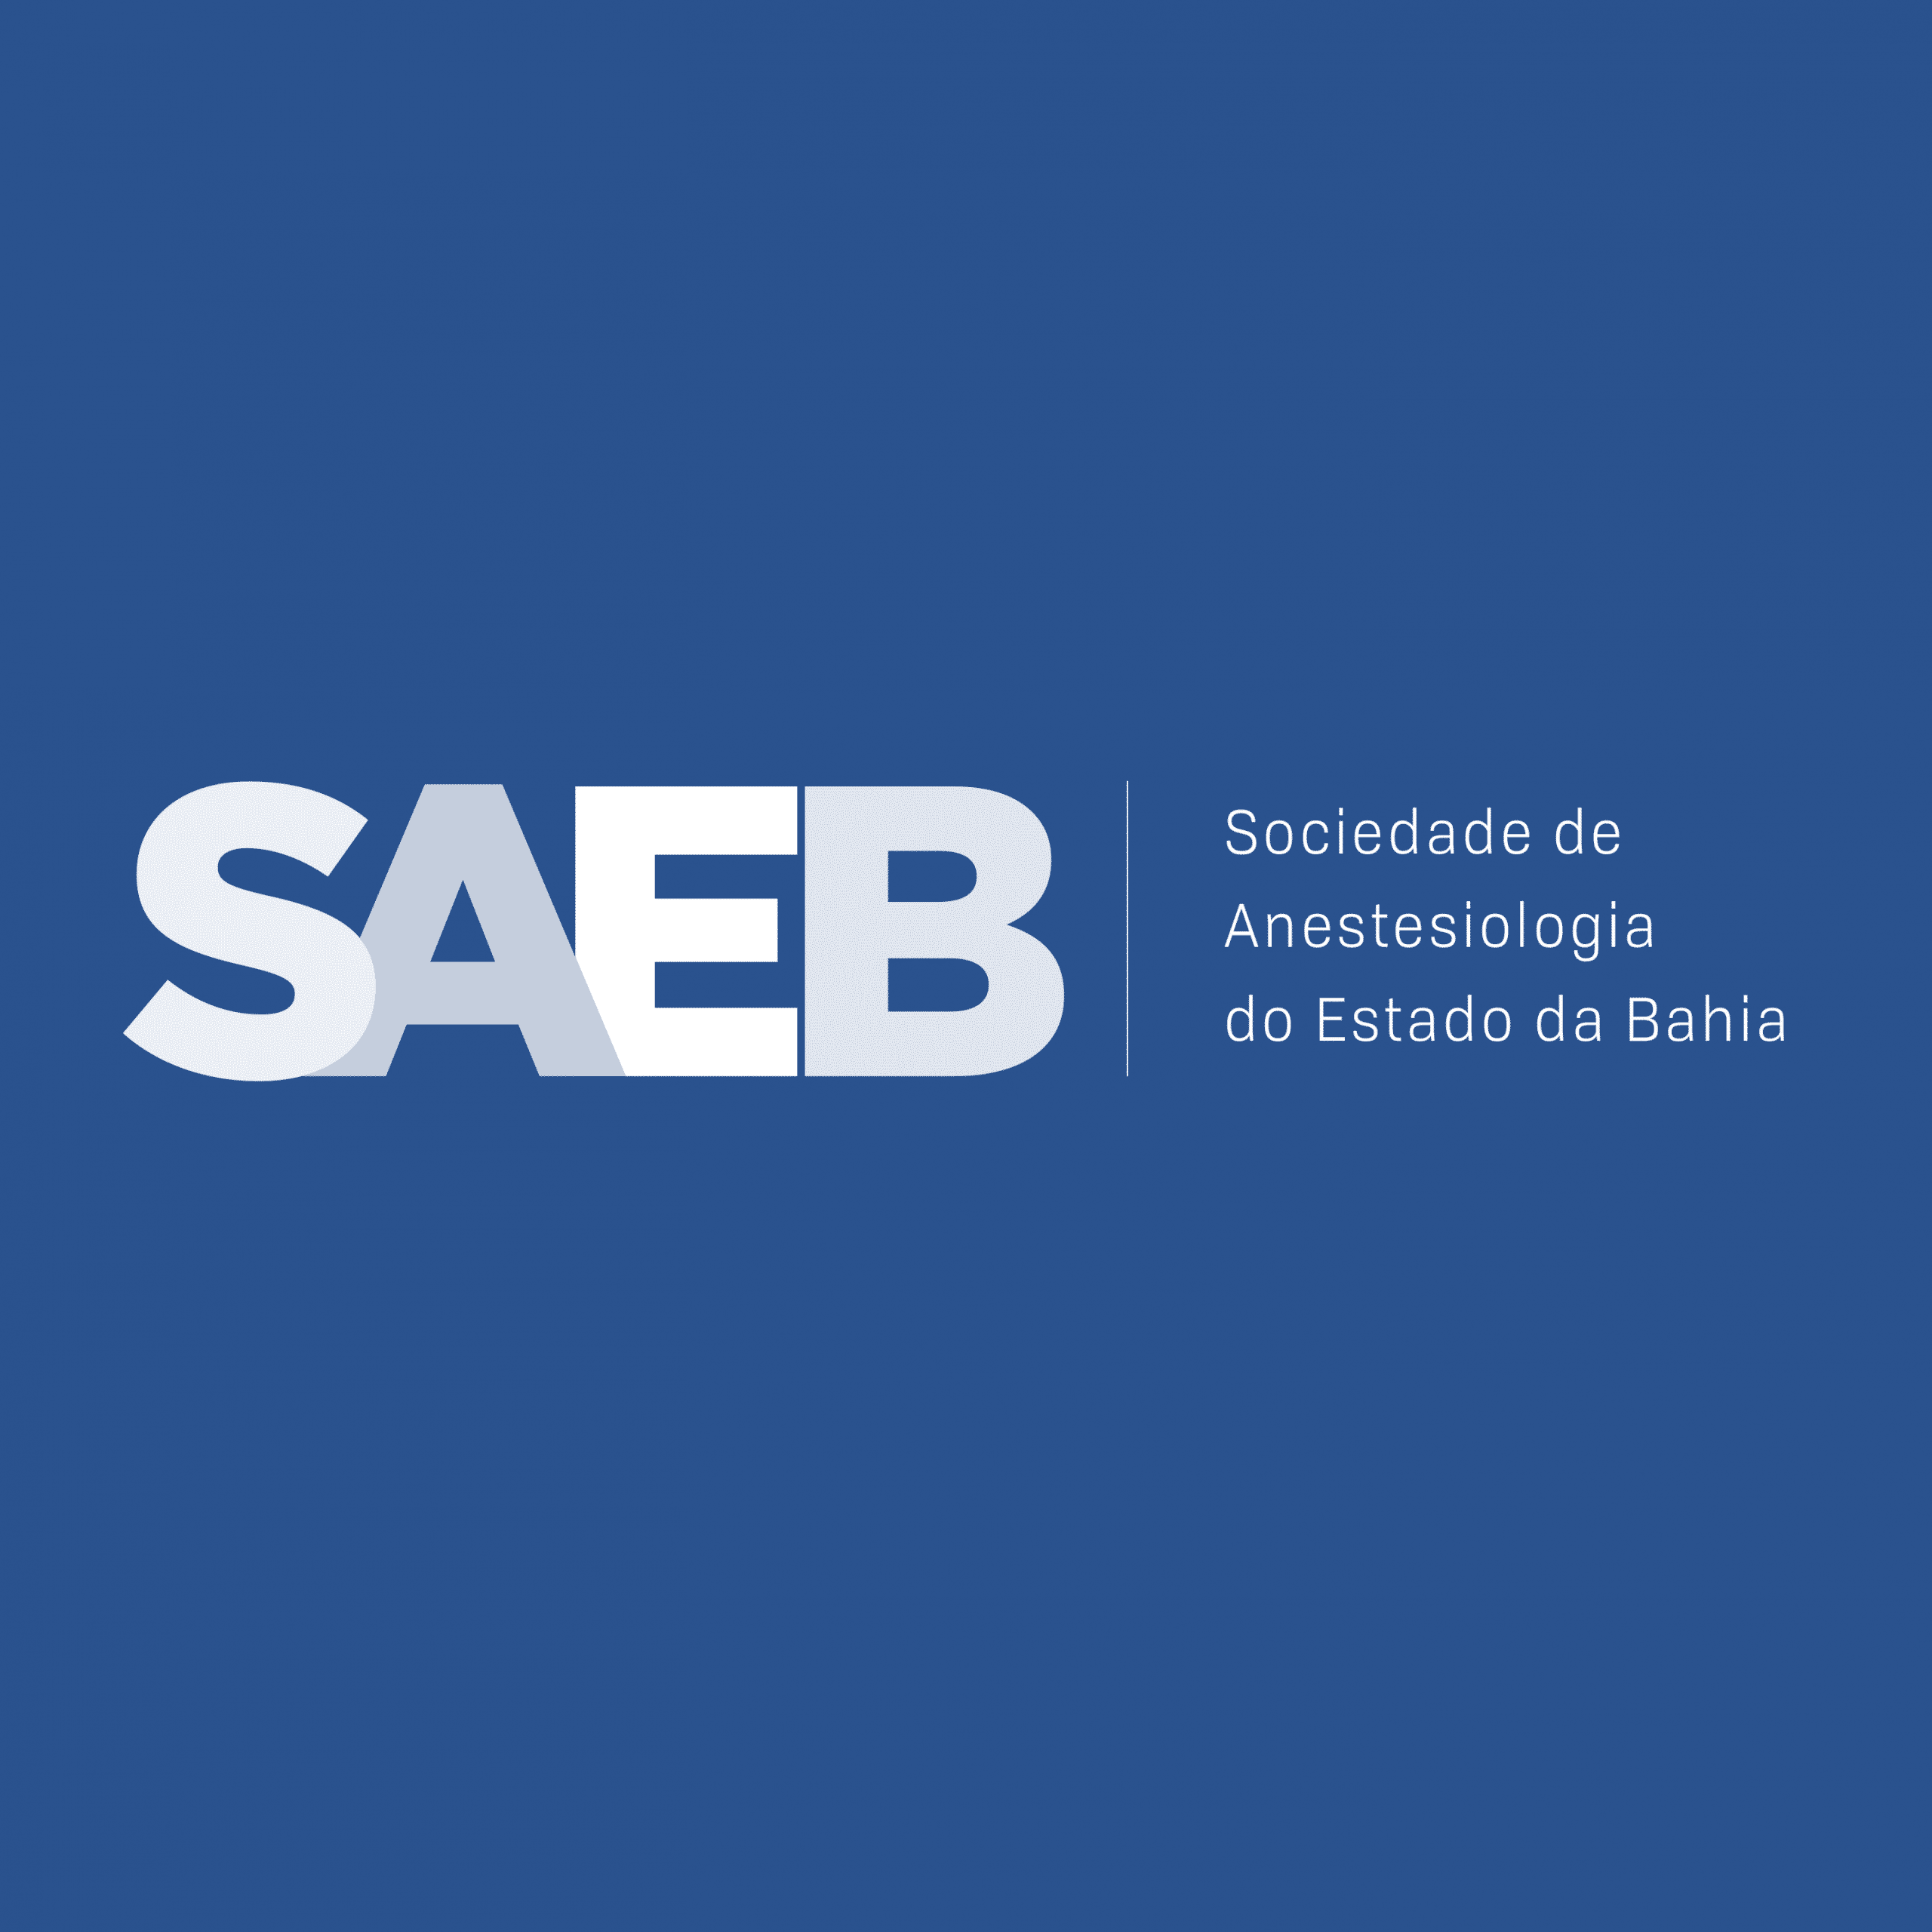 Sociedade de Anestesiologia do Estado da Bahia (SAEB)